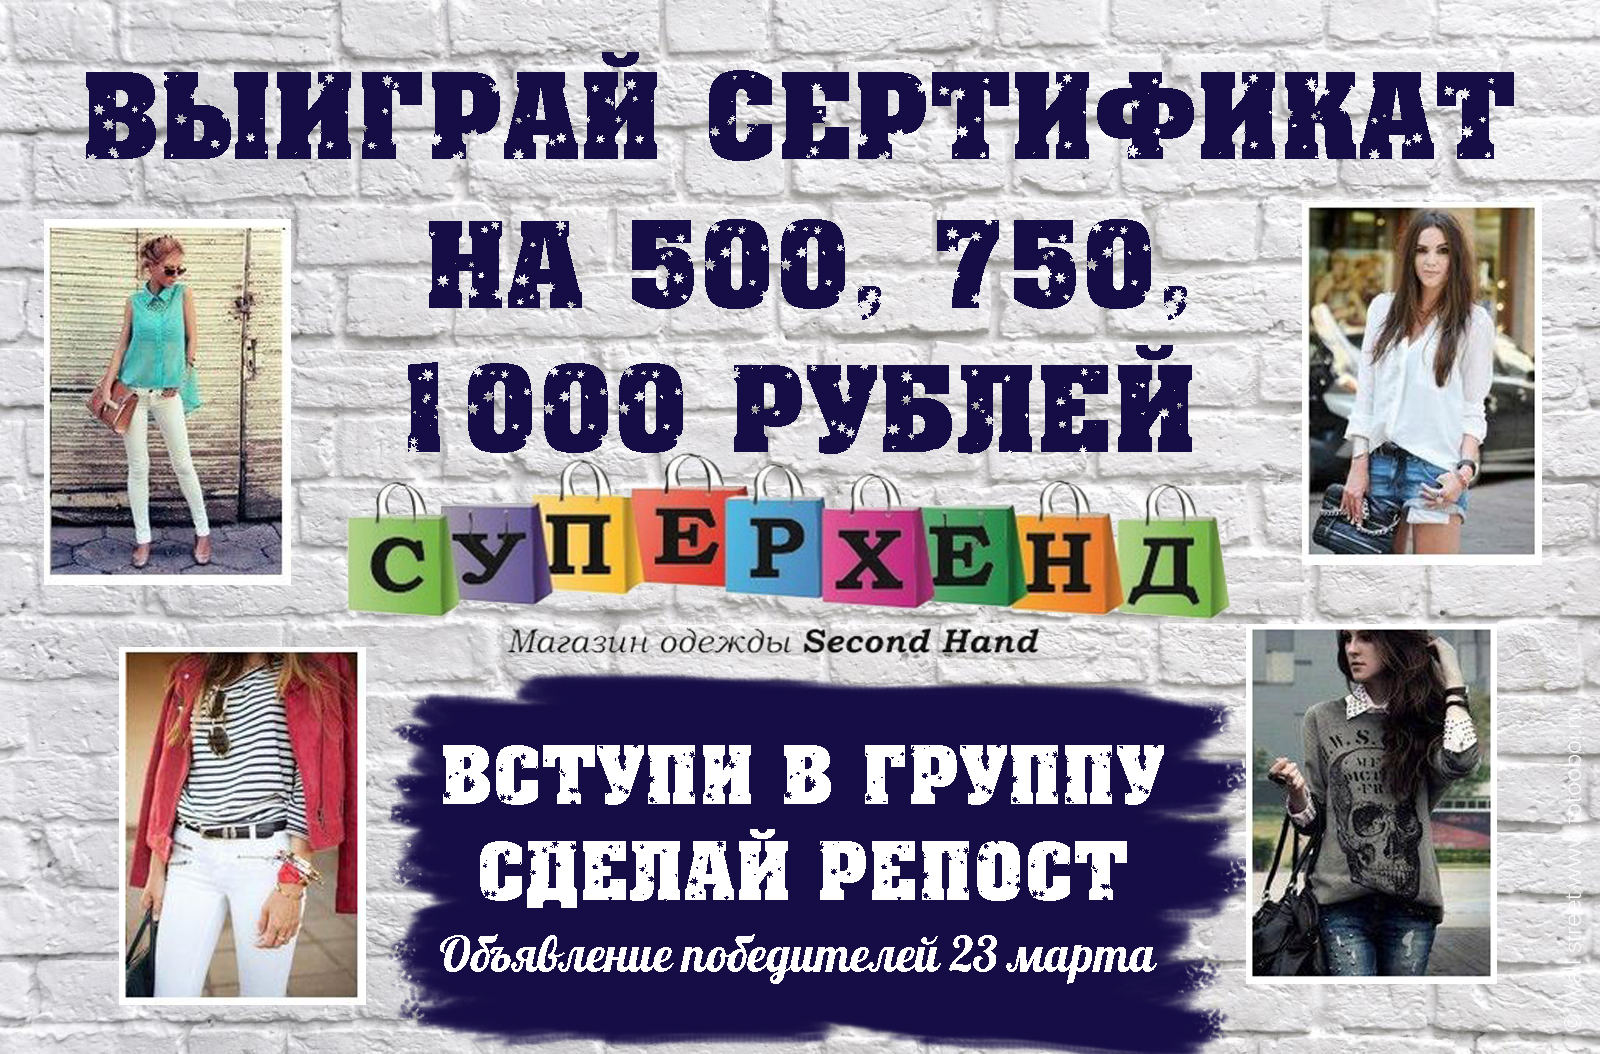 СУПЕРХЕНД дарит сертификаты на 500, 750, 1000 рублей для своих подписчиков